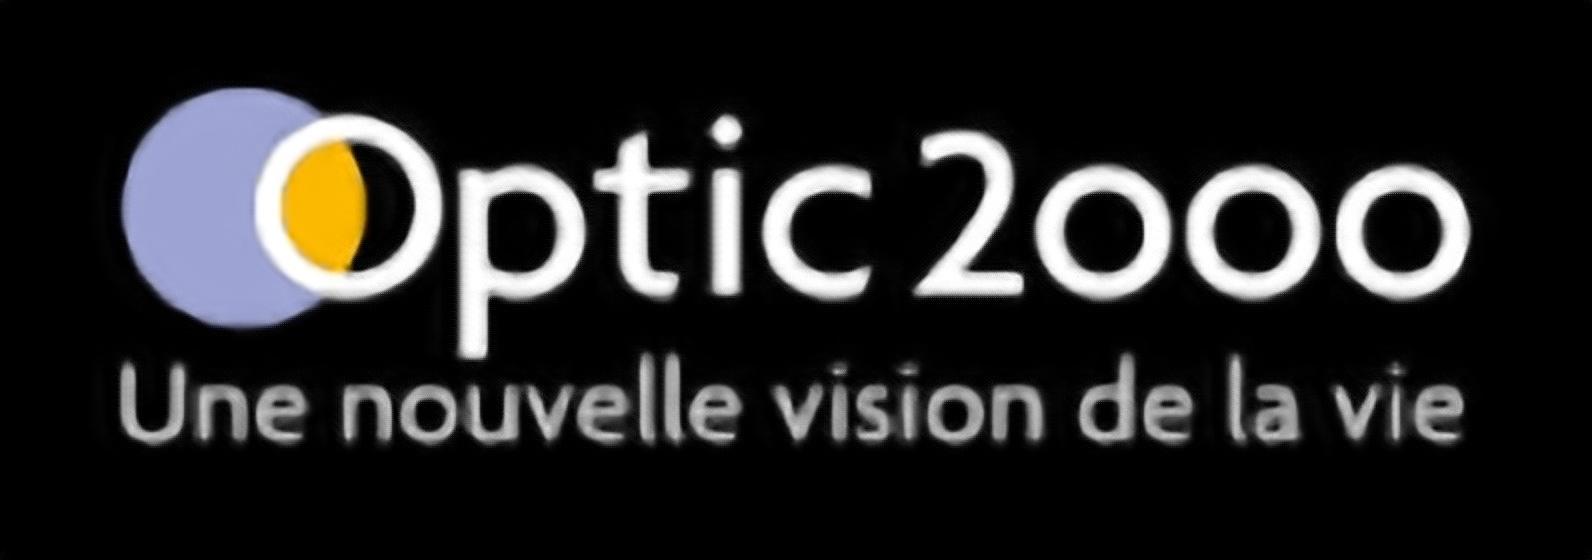 Optique St Nicolas - Optic 2000 Montmorillon